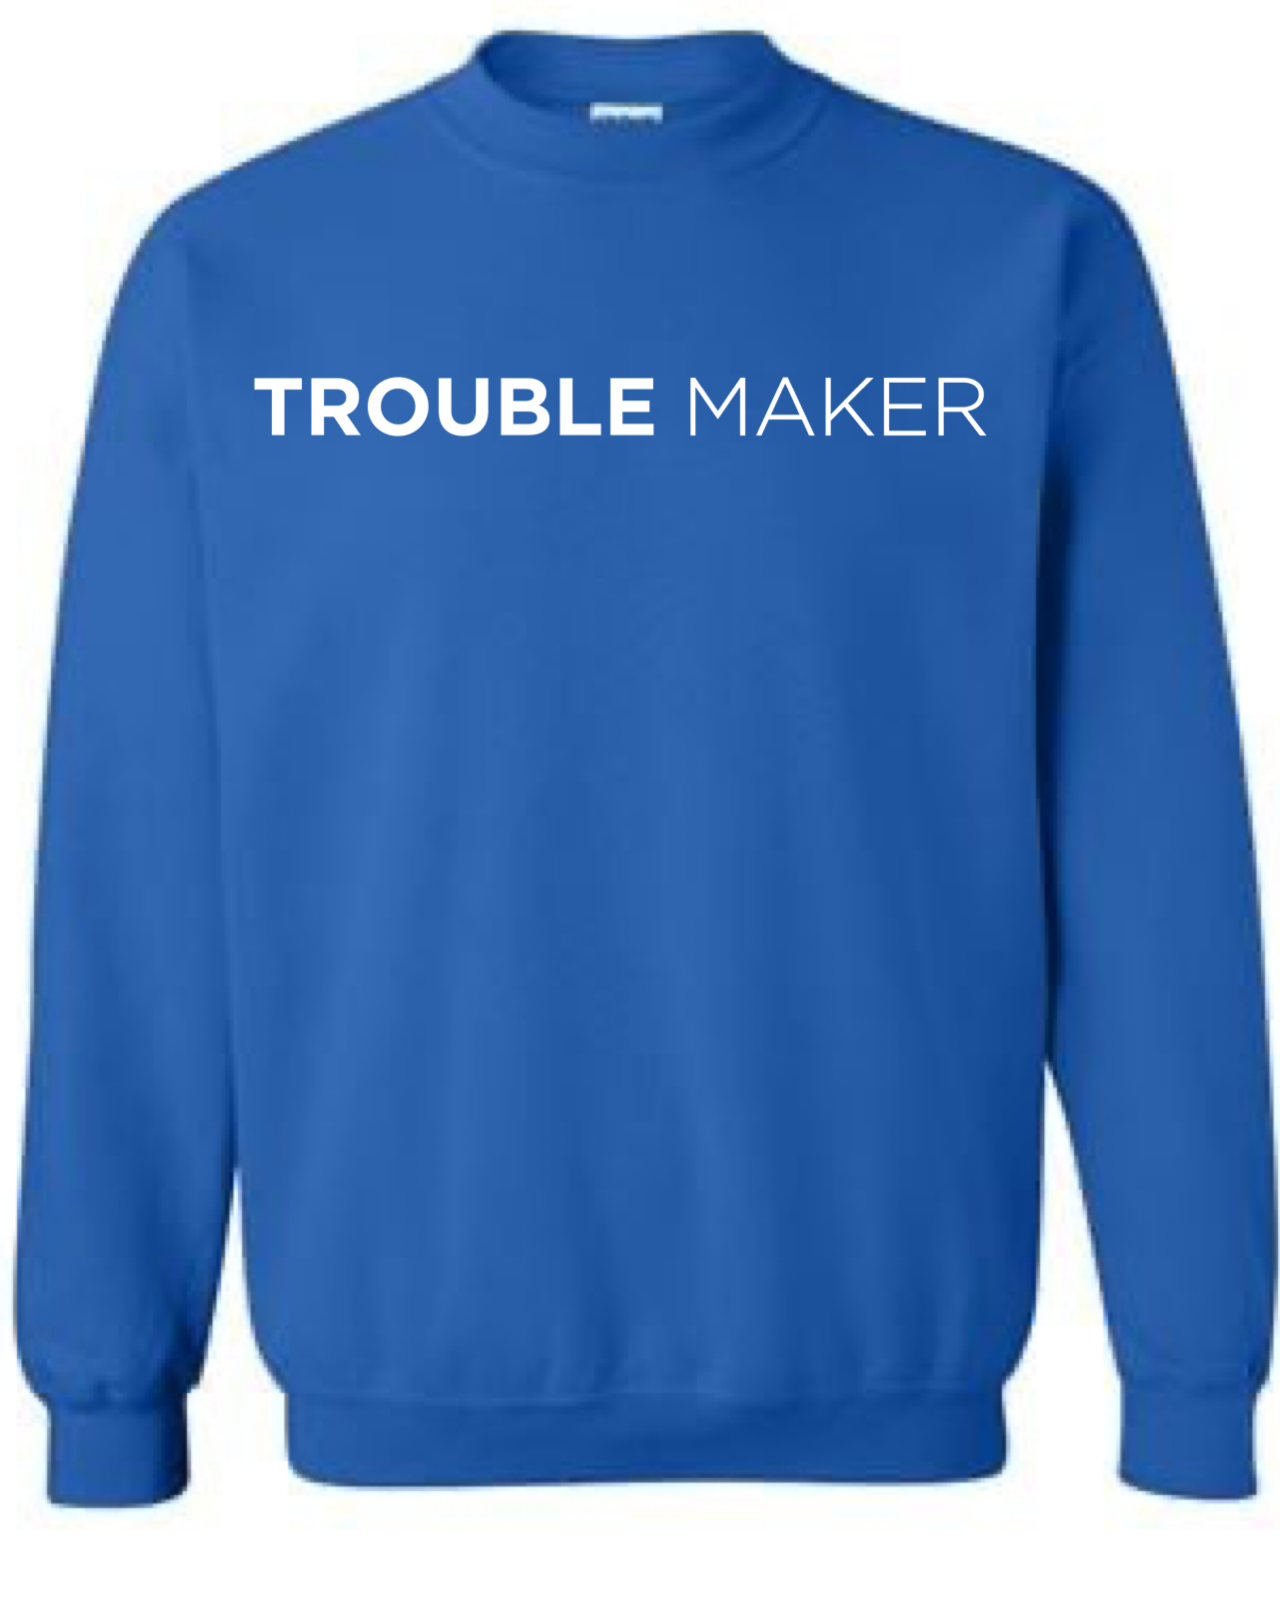 Troublemaker Crewneck Sweatshirt